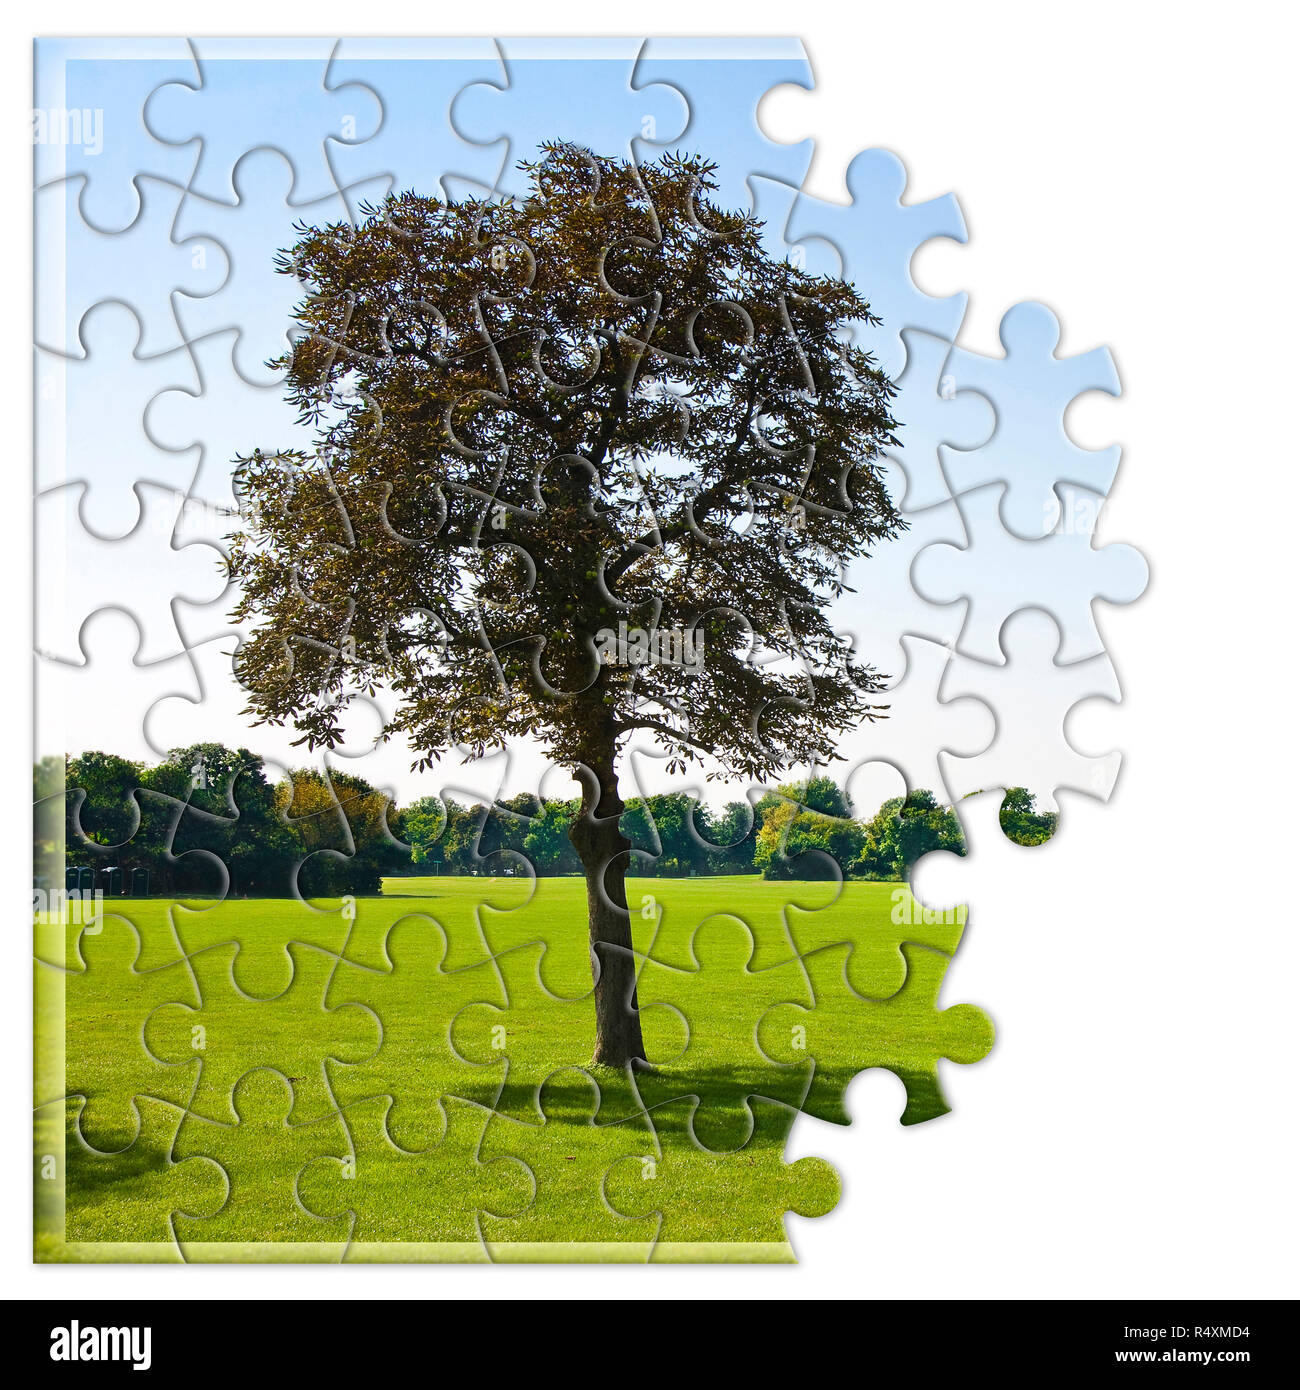 Isolierte Baum auf einer grünen Wiese - Umweltschutz Konzept Bild im Puzzle Form Stockfoto